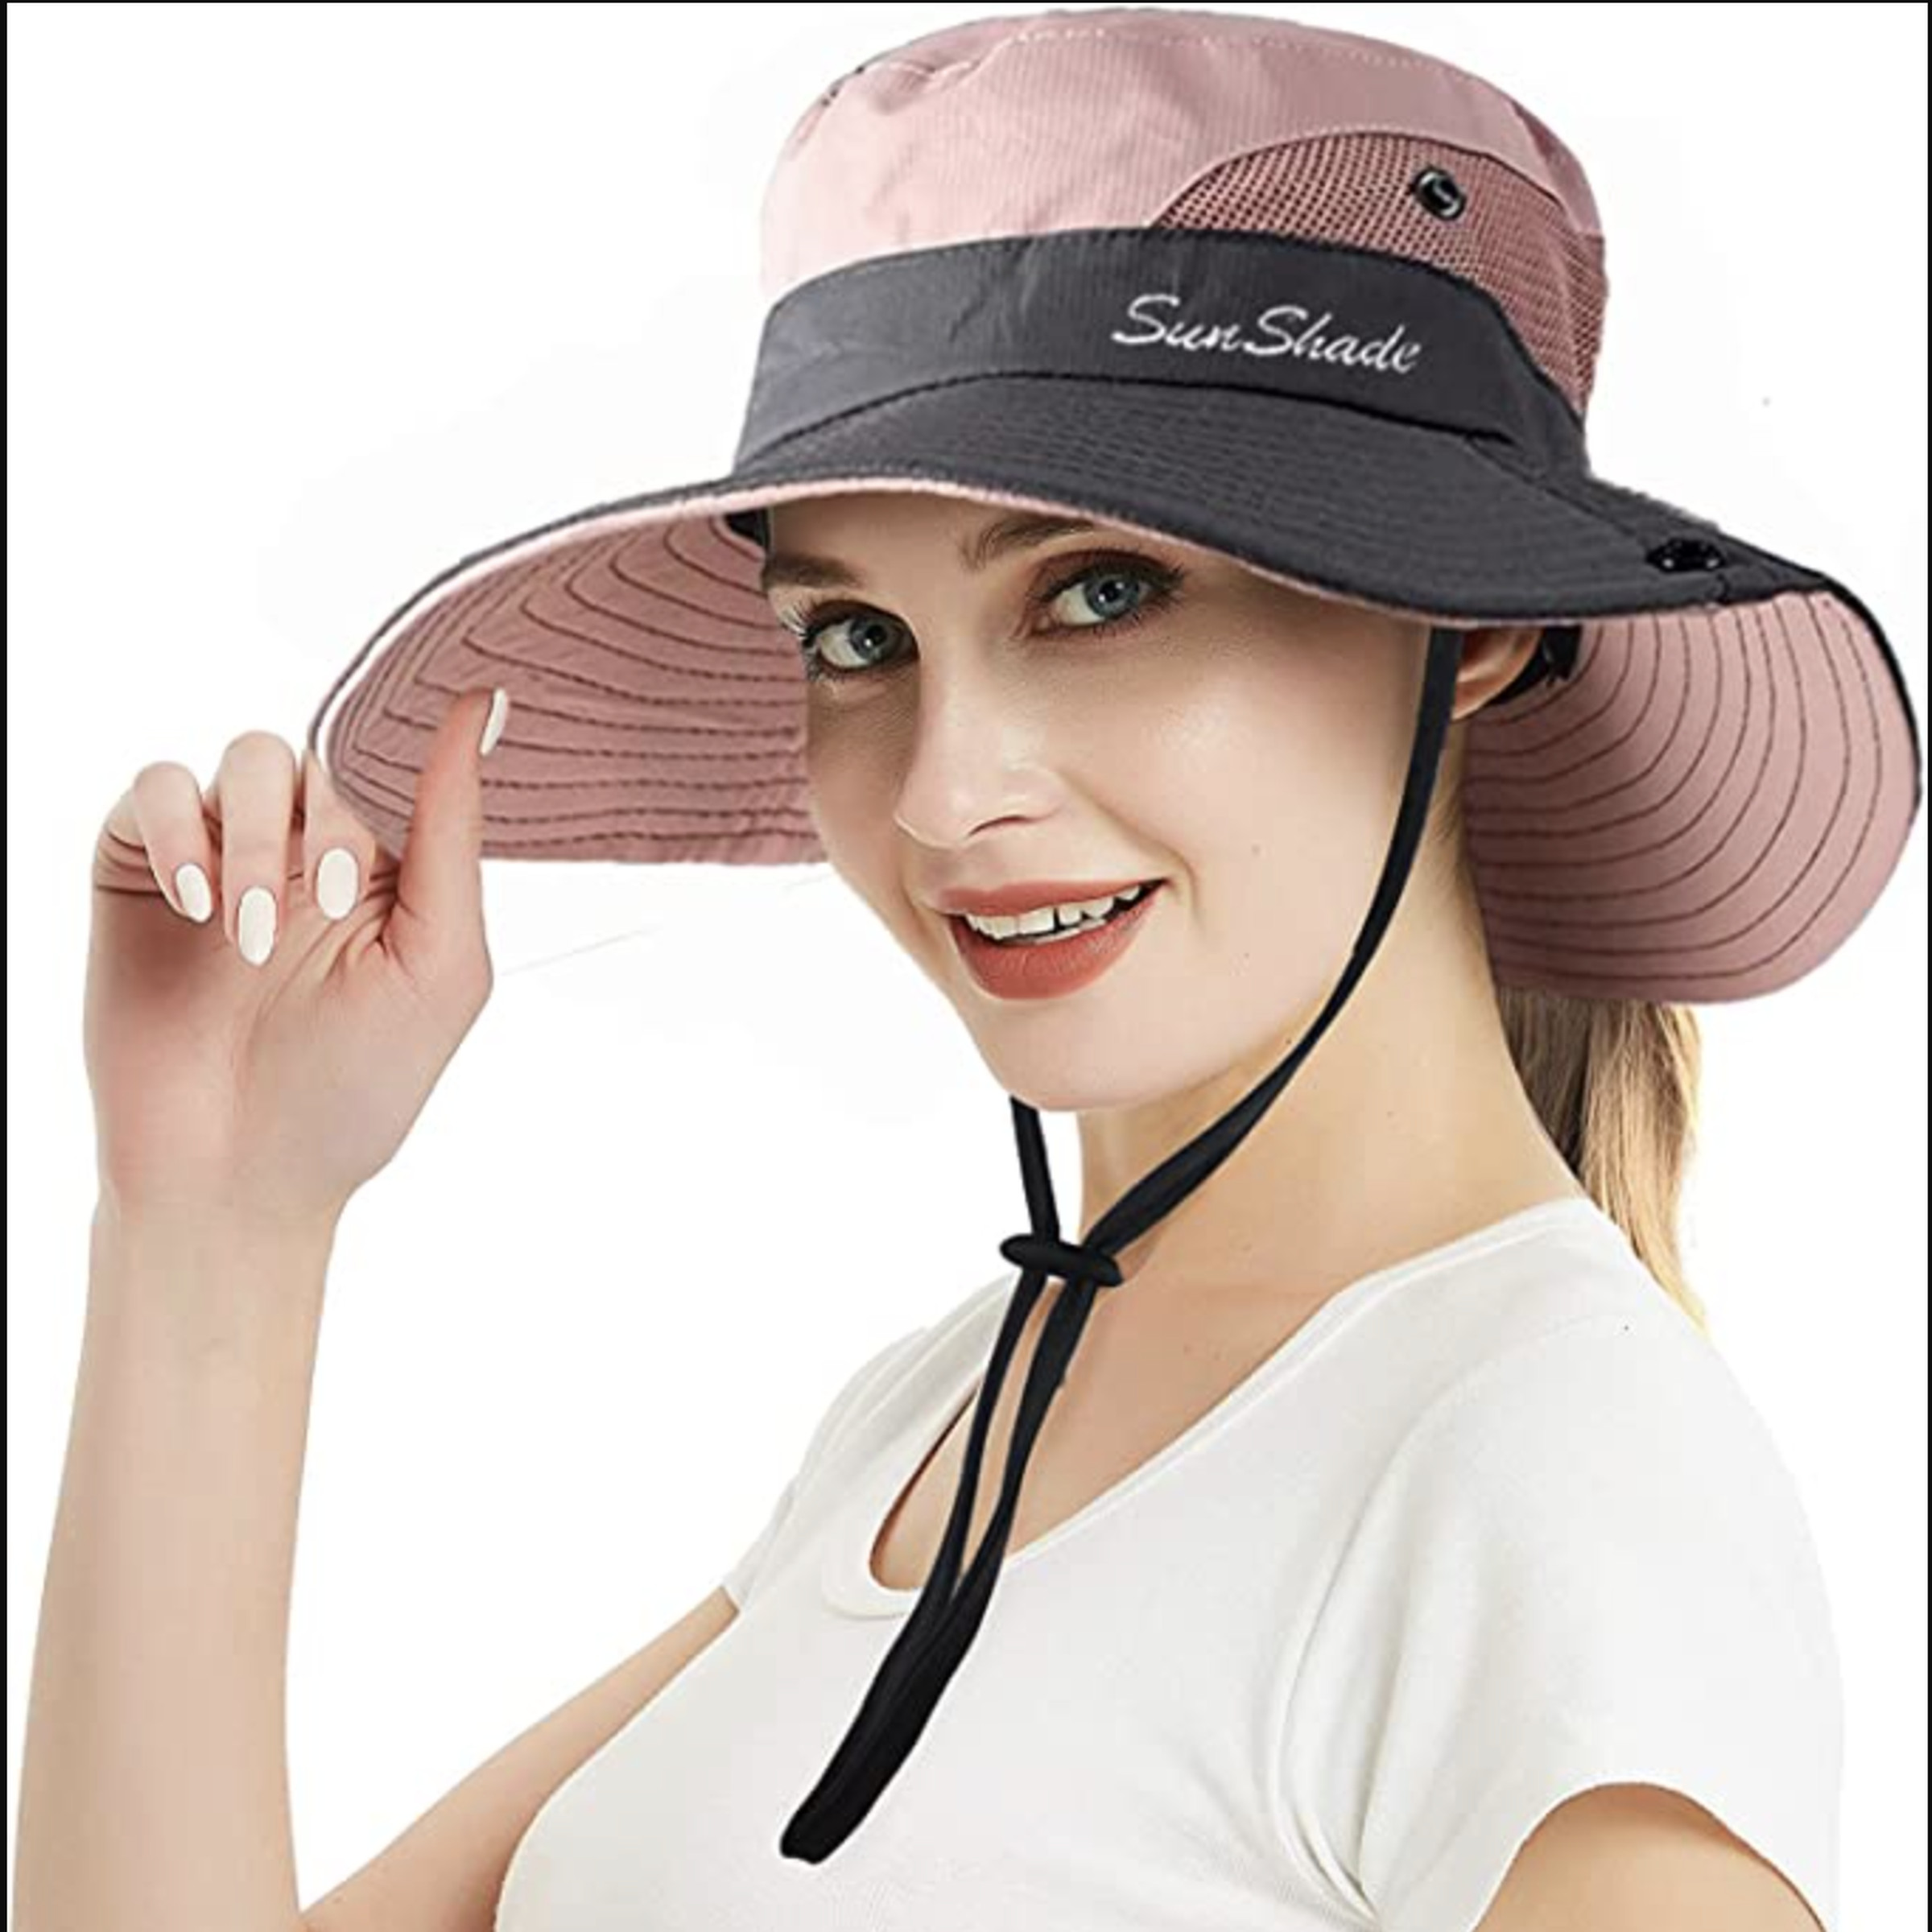 woman wearing wide-brimmed hat